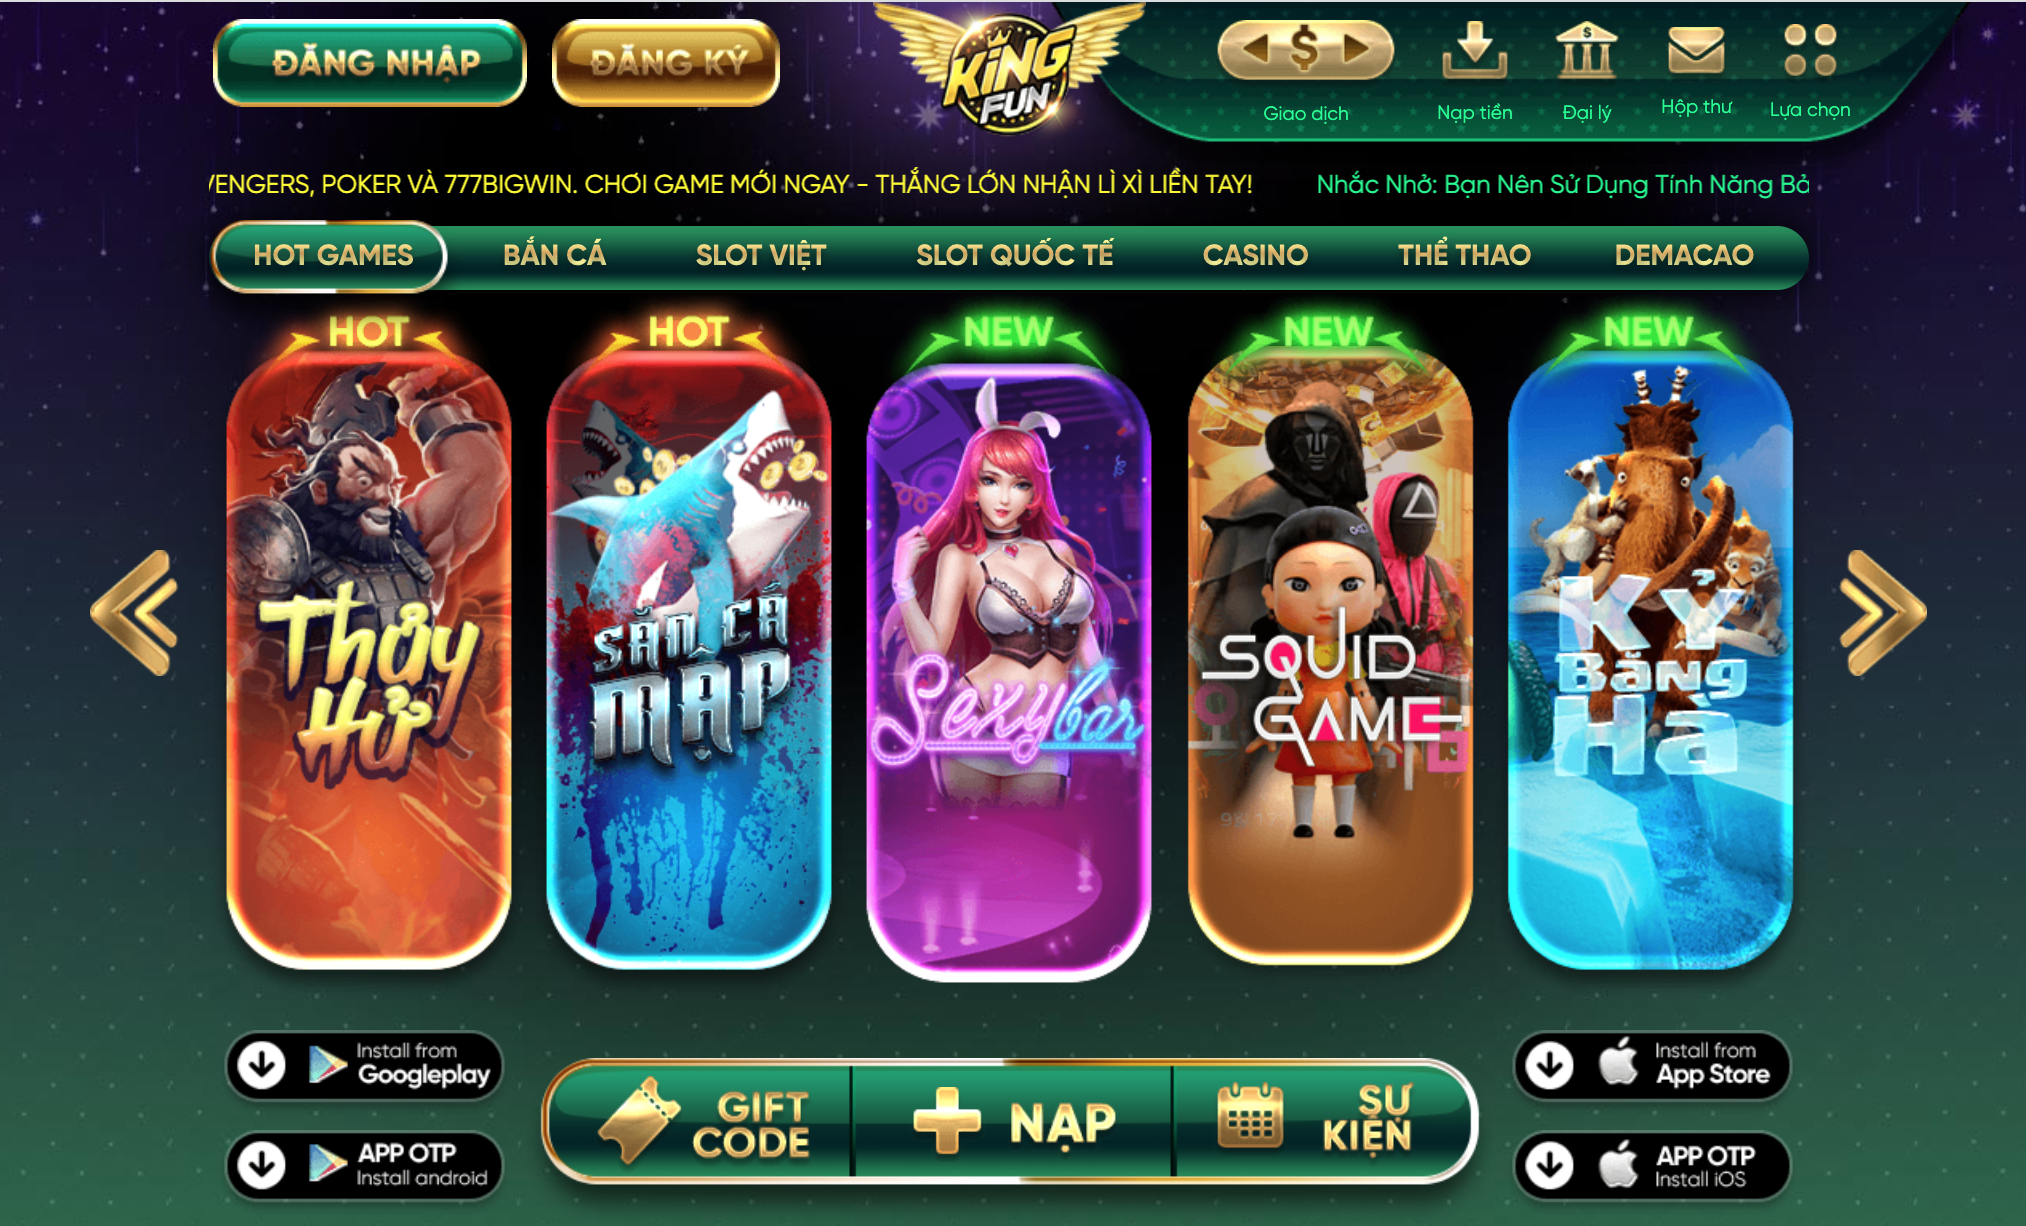 Kinh nghiệm chơi Slot Game Thủy Hử Kingfun